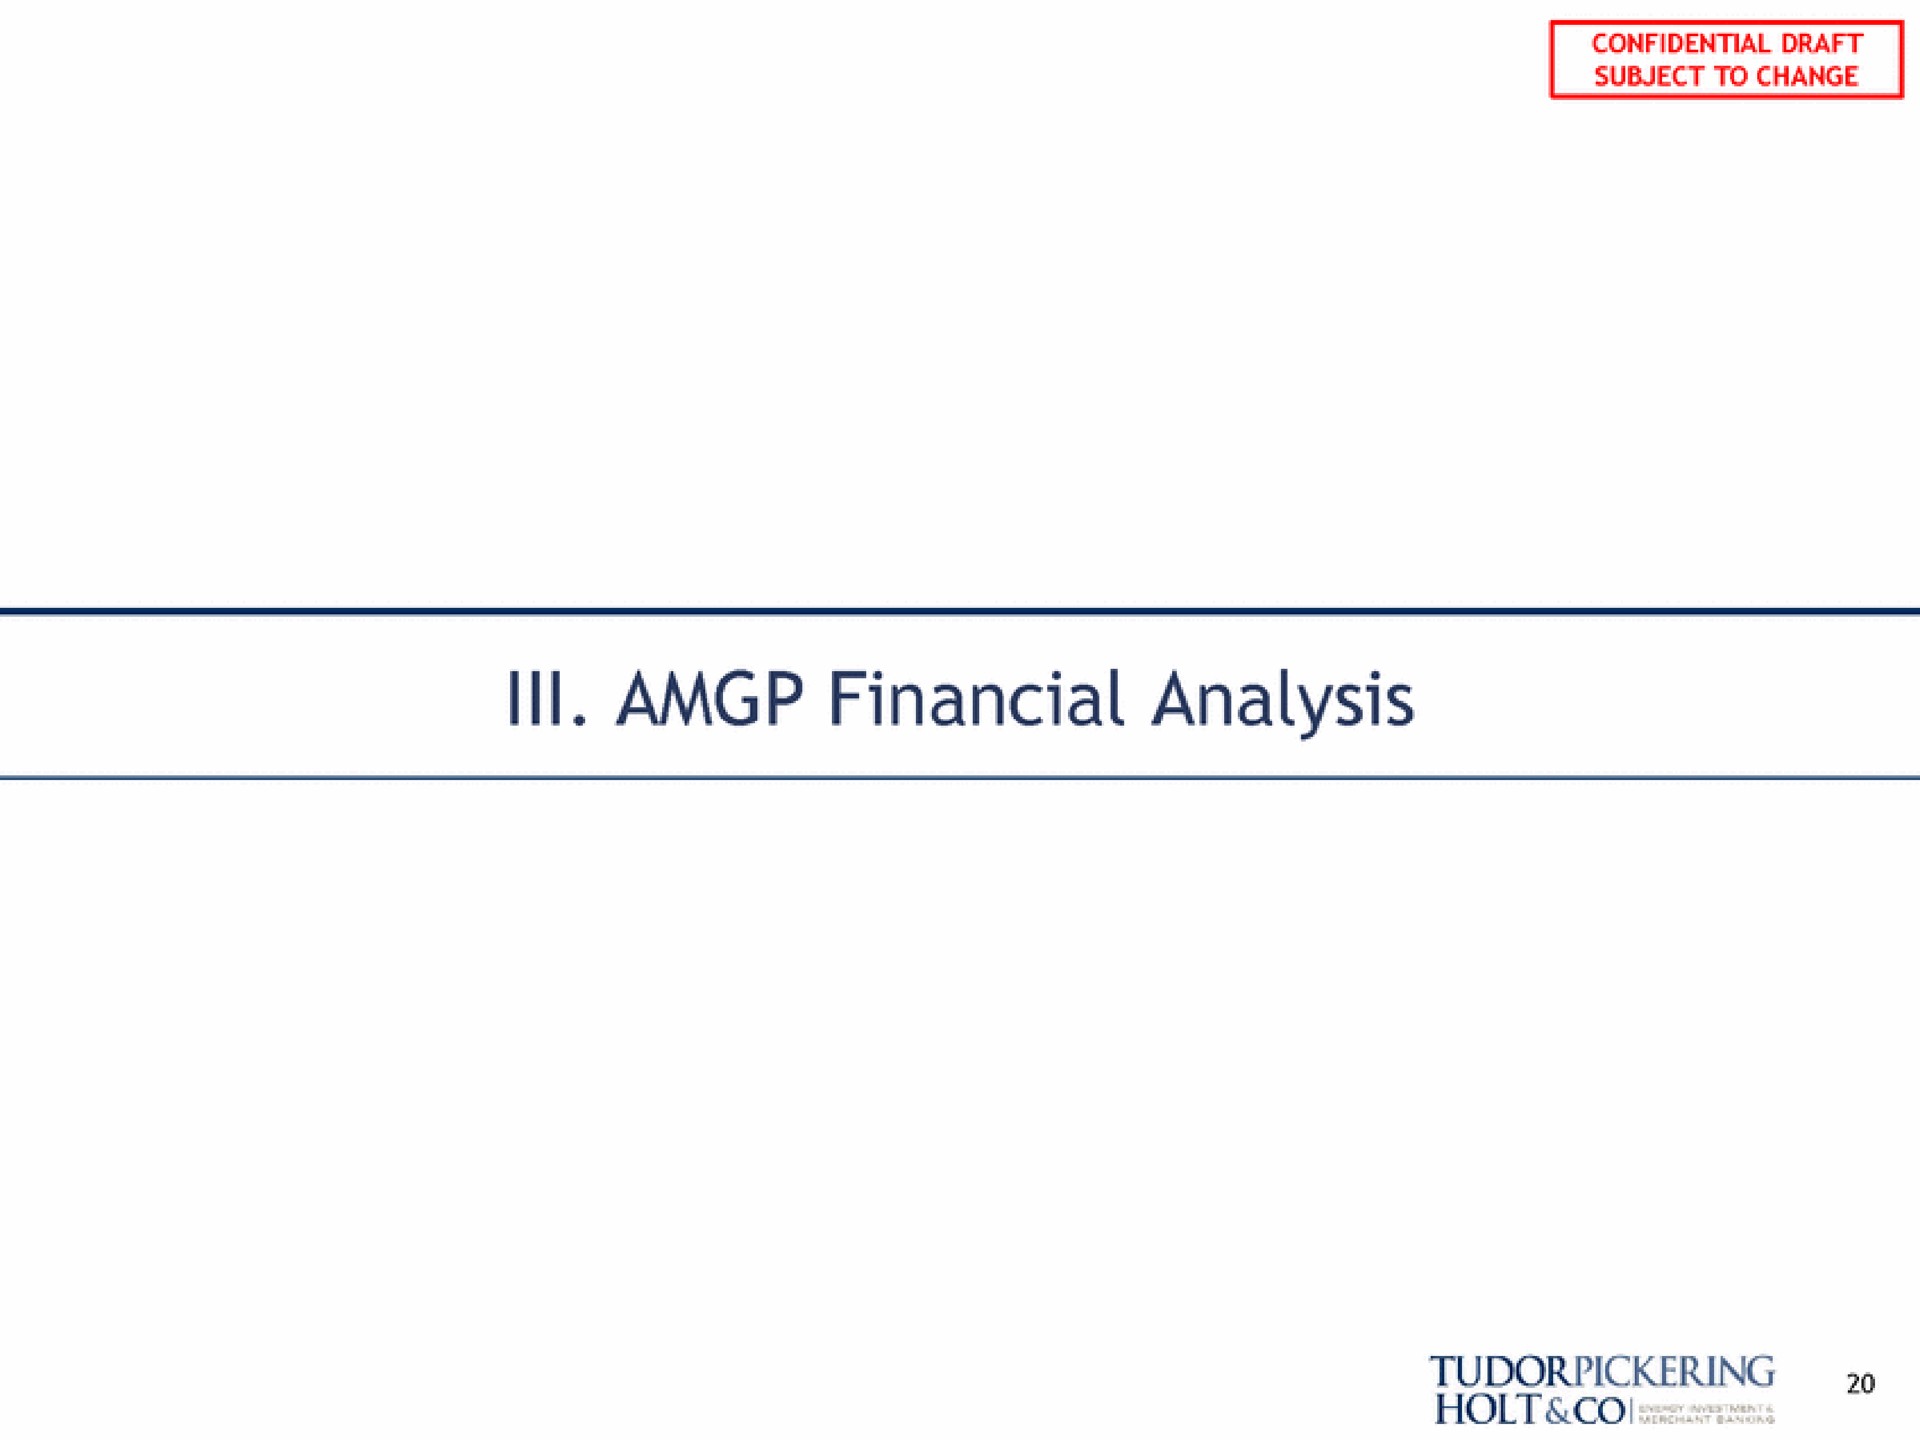 ill financial analysis | Tudor, Pickering, Holt & Co